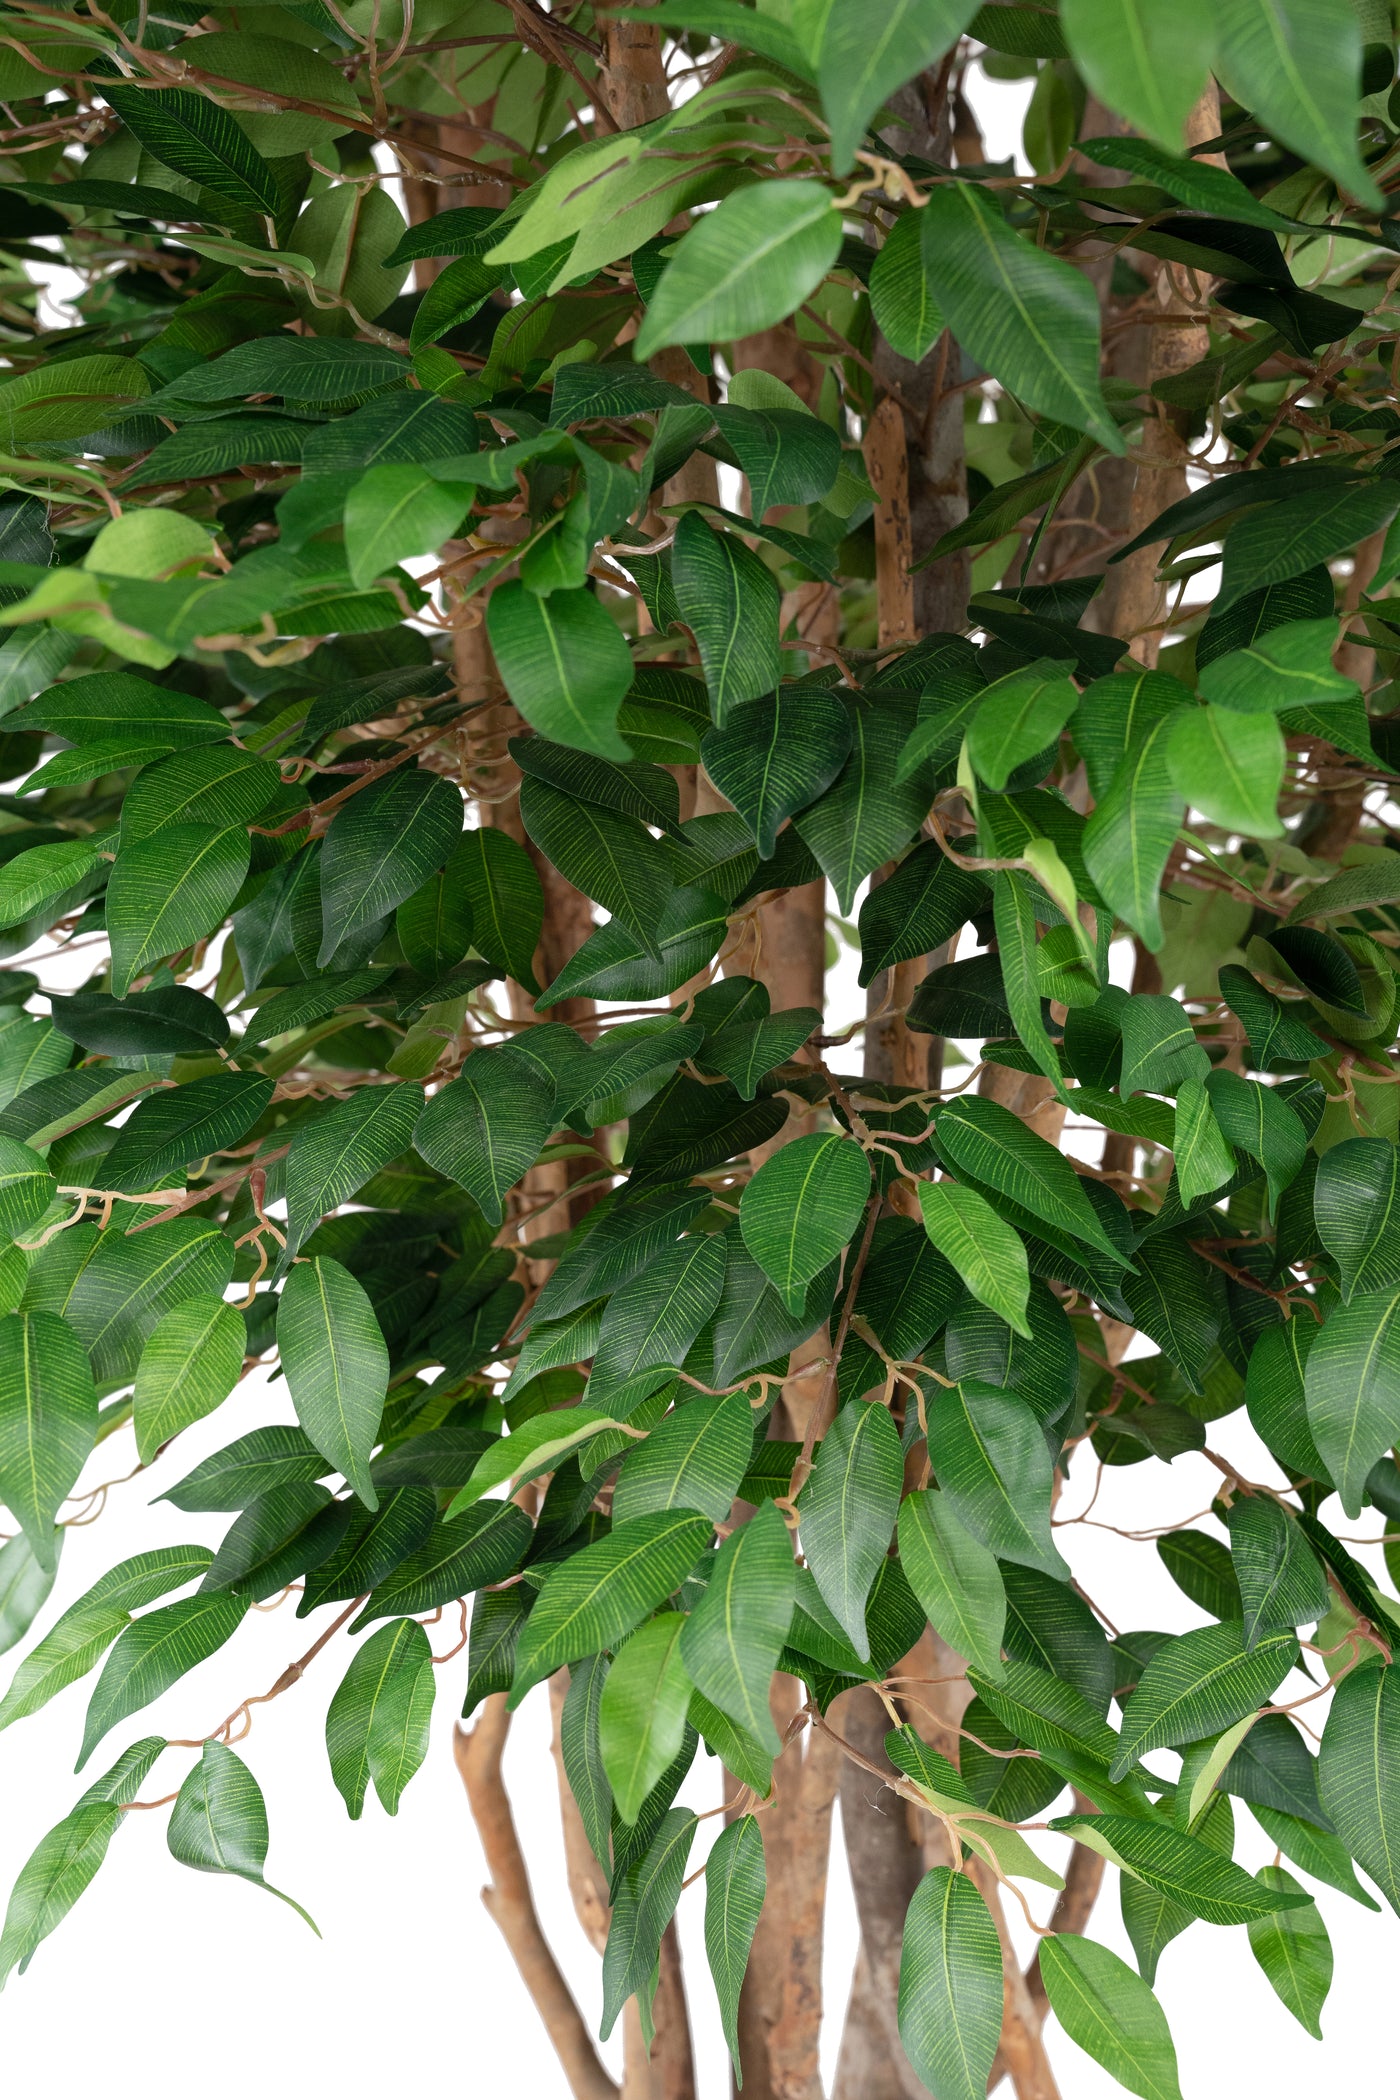 Ficus artifcial cu trunchiuri multiple D130xH210 cm